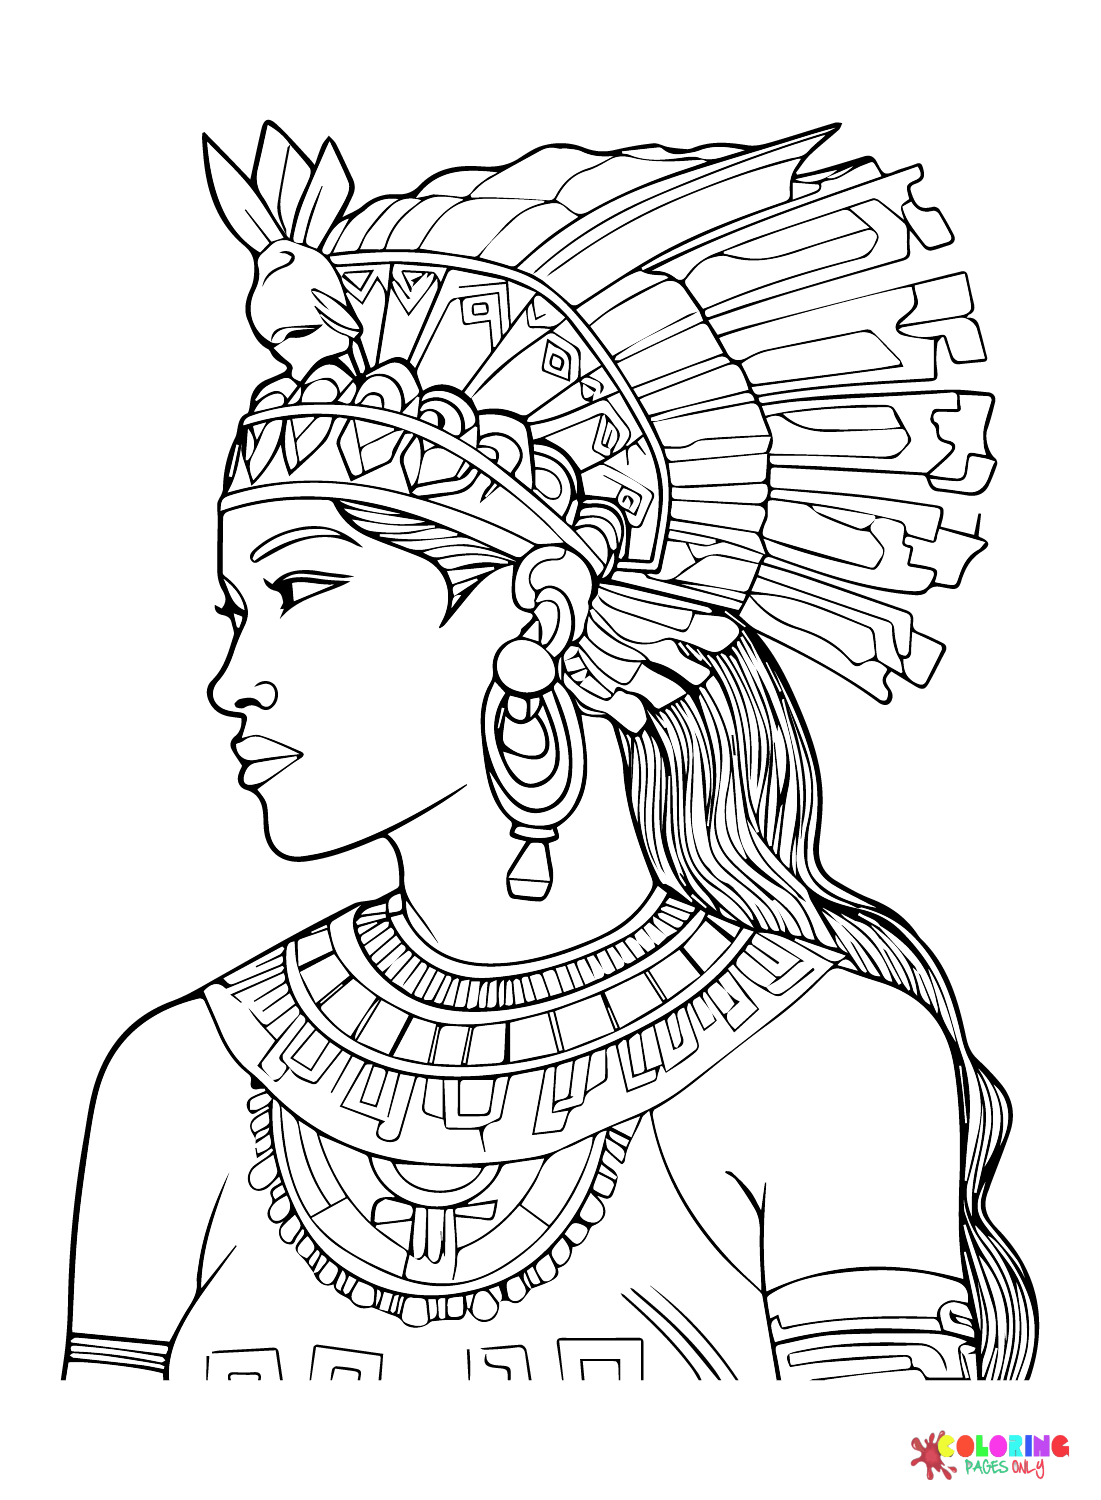 Maya-mensen uit de Maya-beschaving